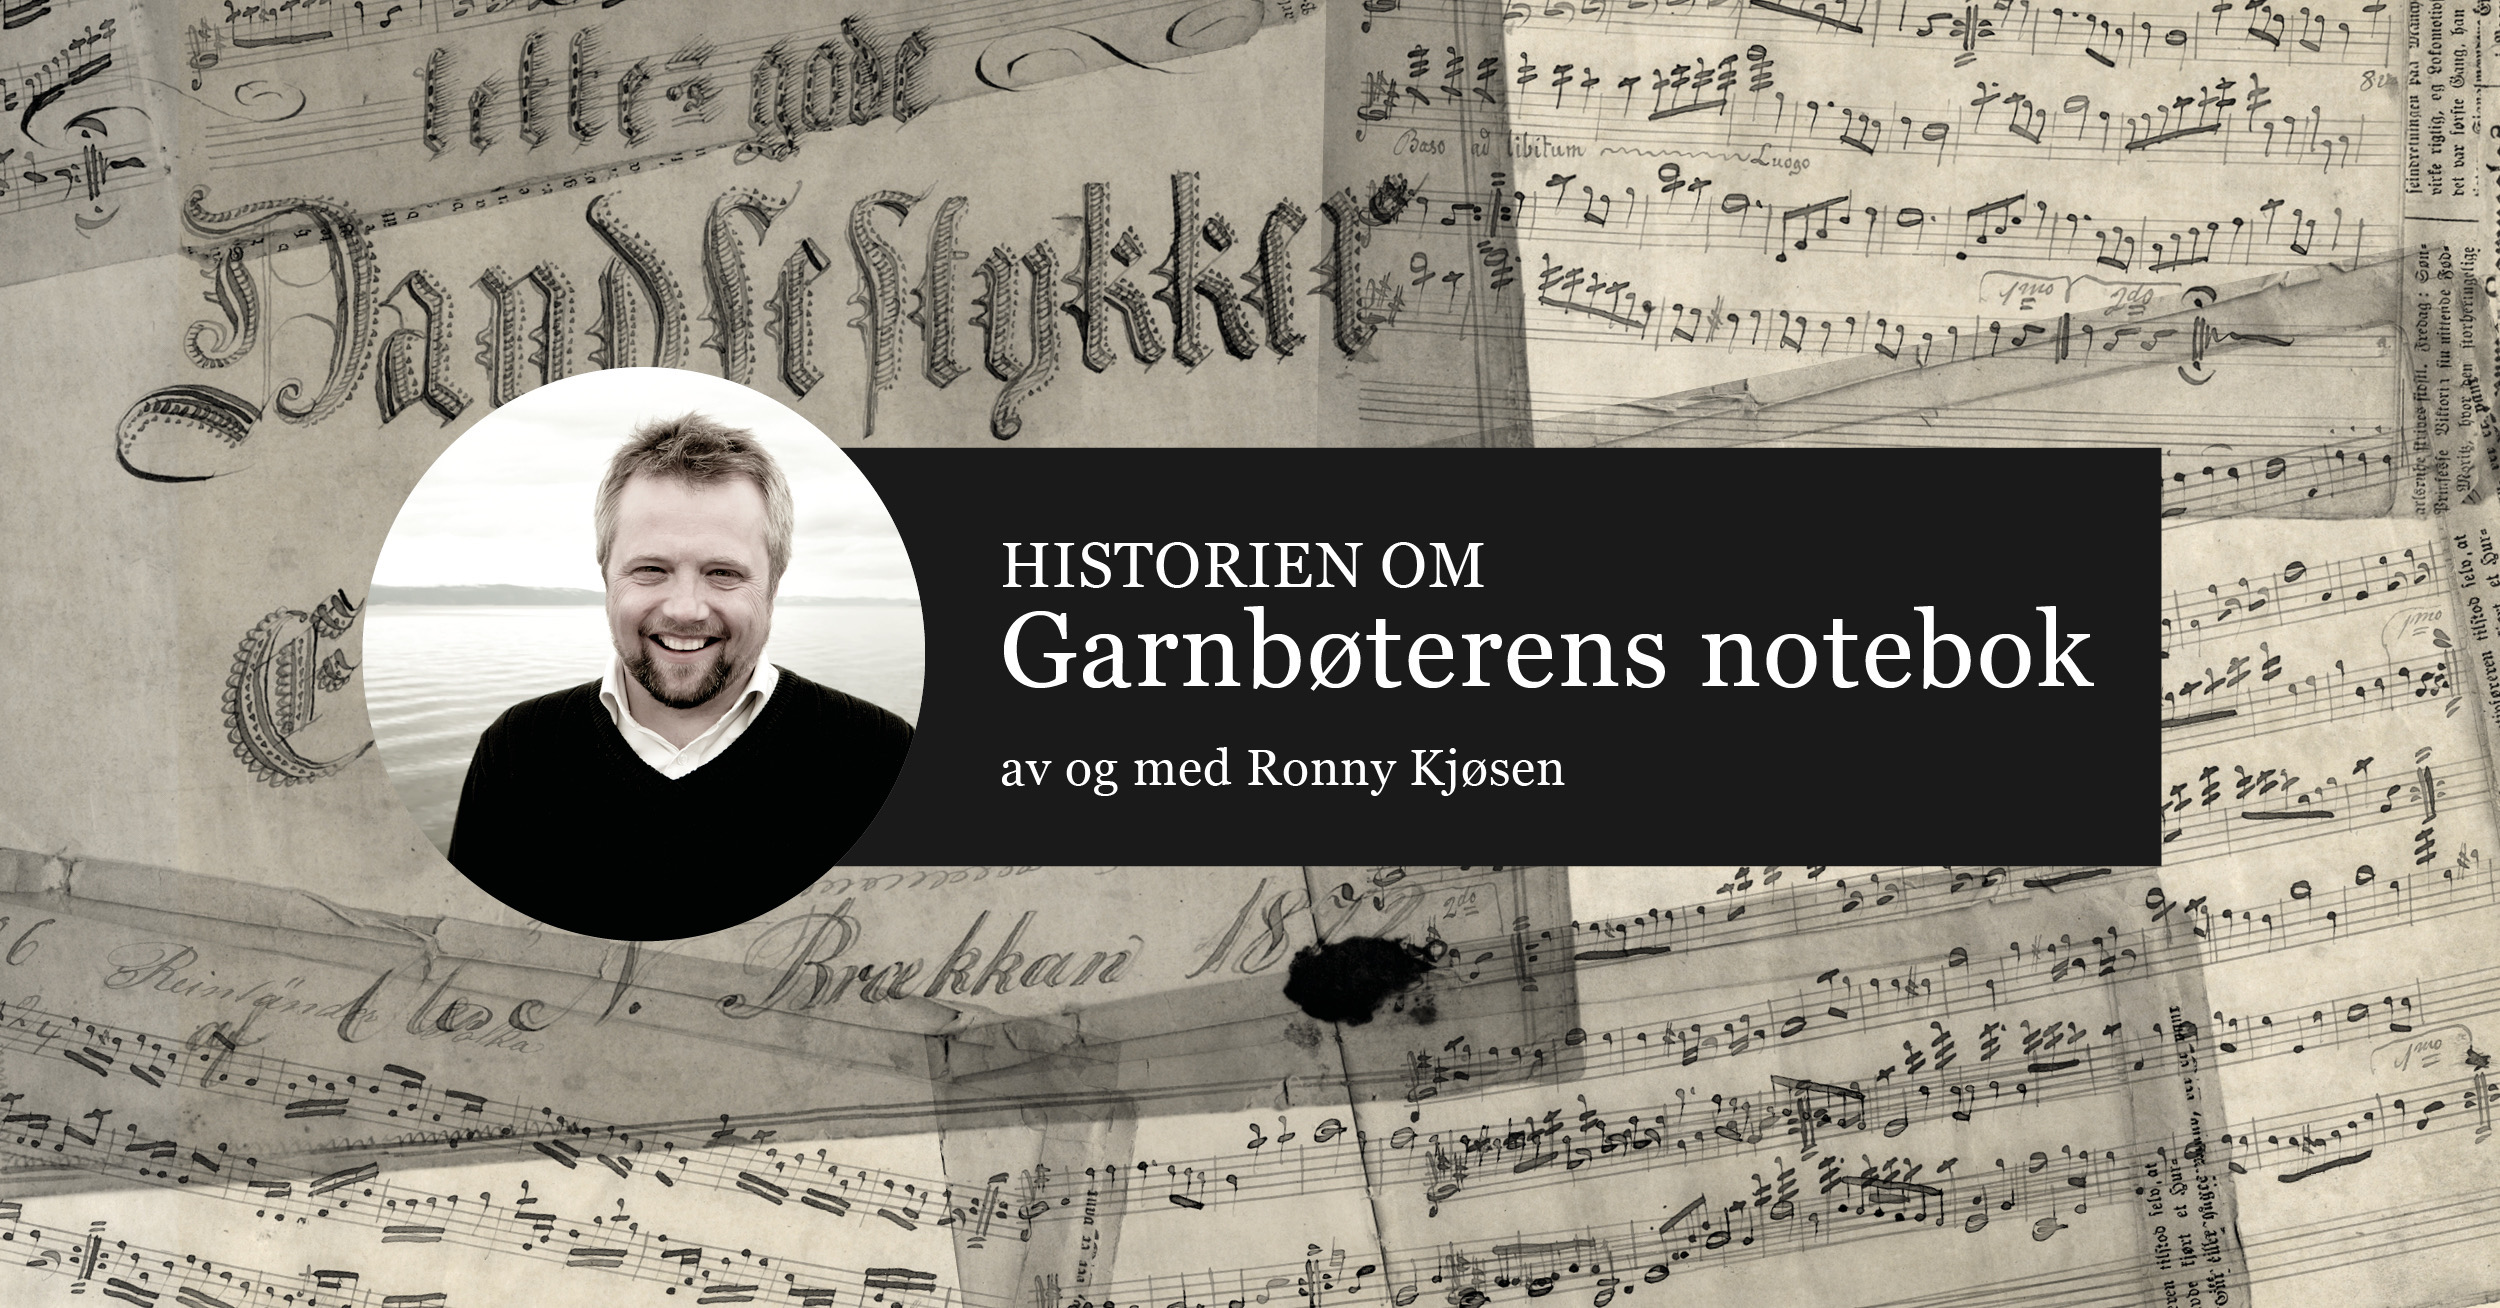 «Garnbøterens notebok» av og med Ronny Kjøsen